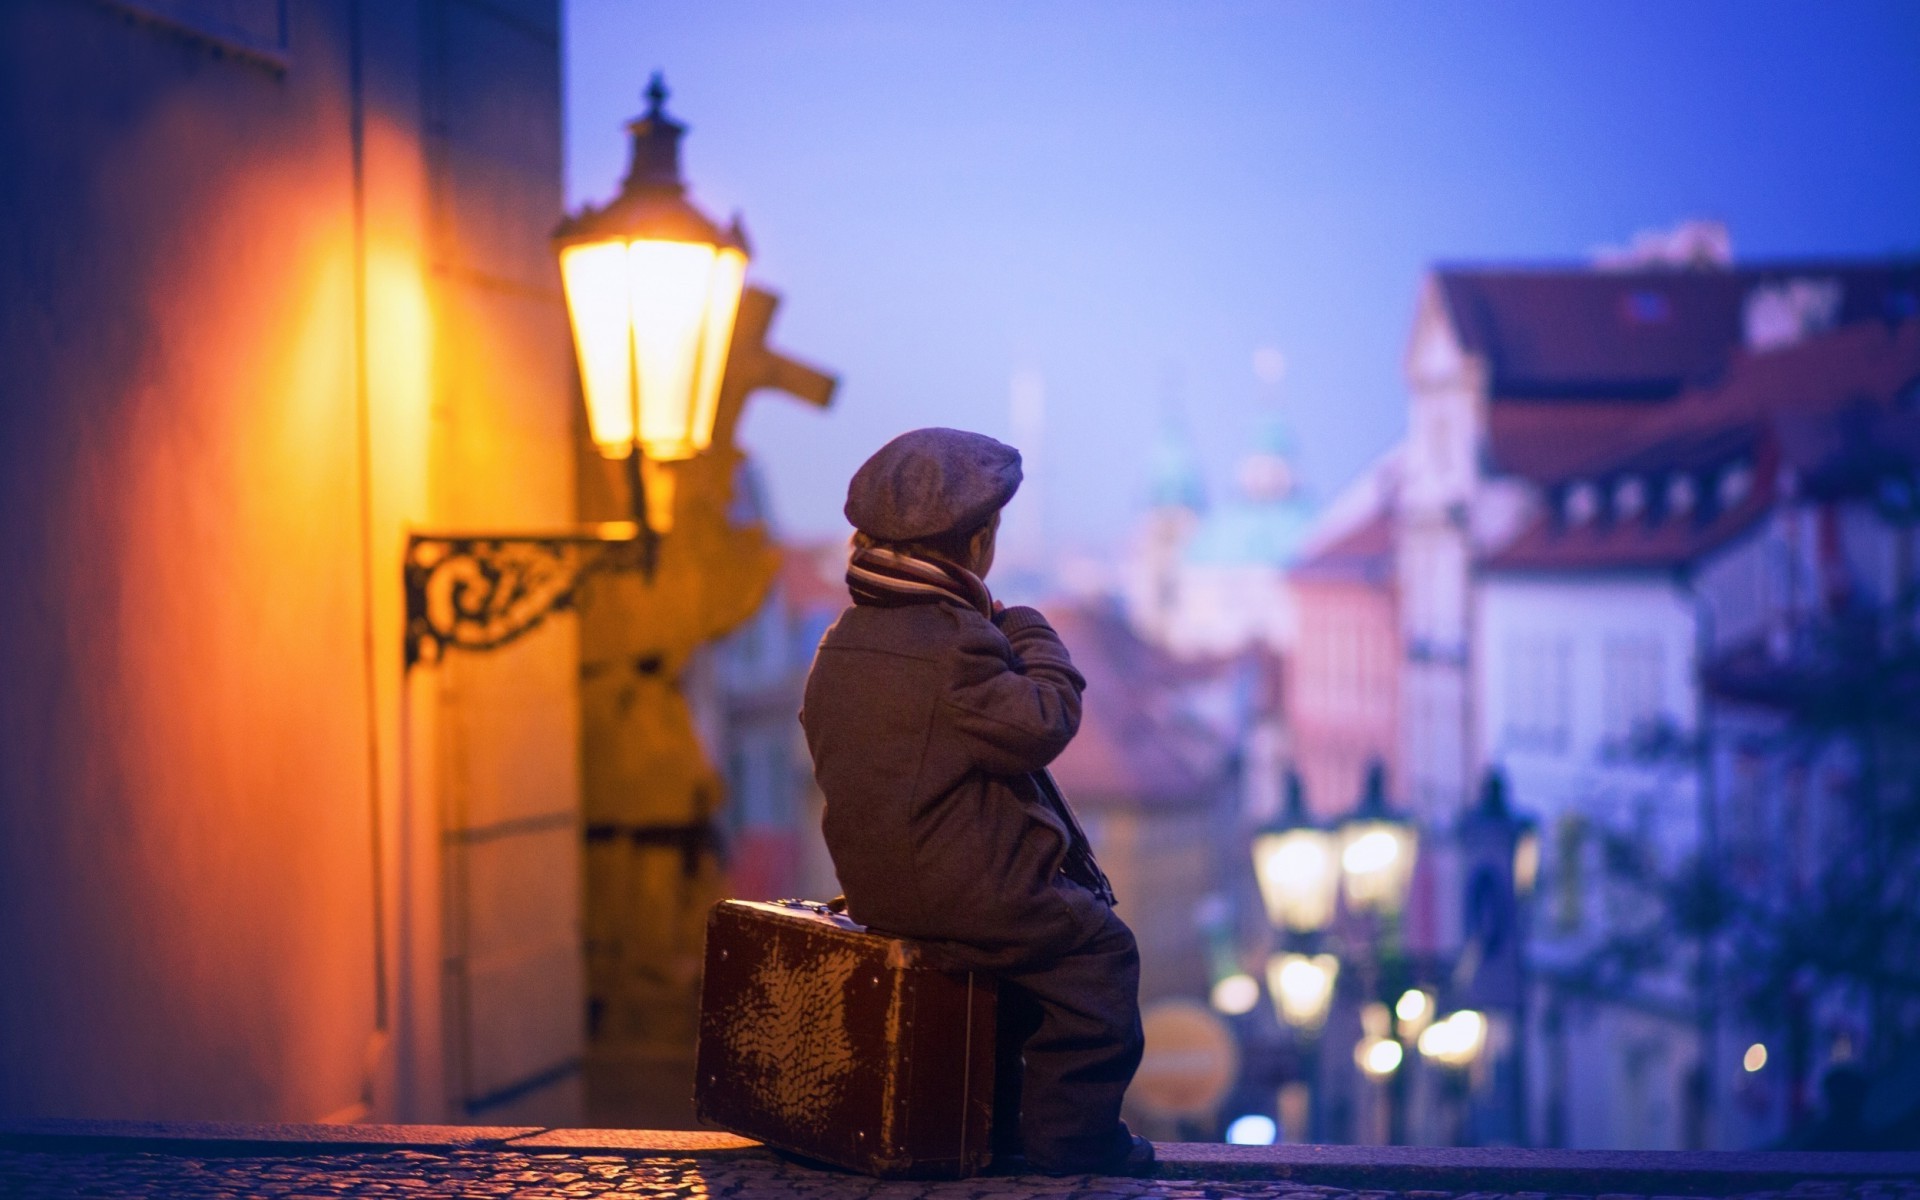 Ребёнок на фоне ночного города